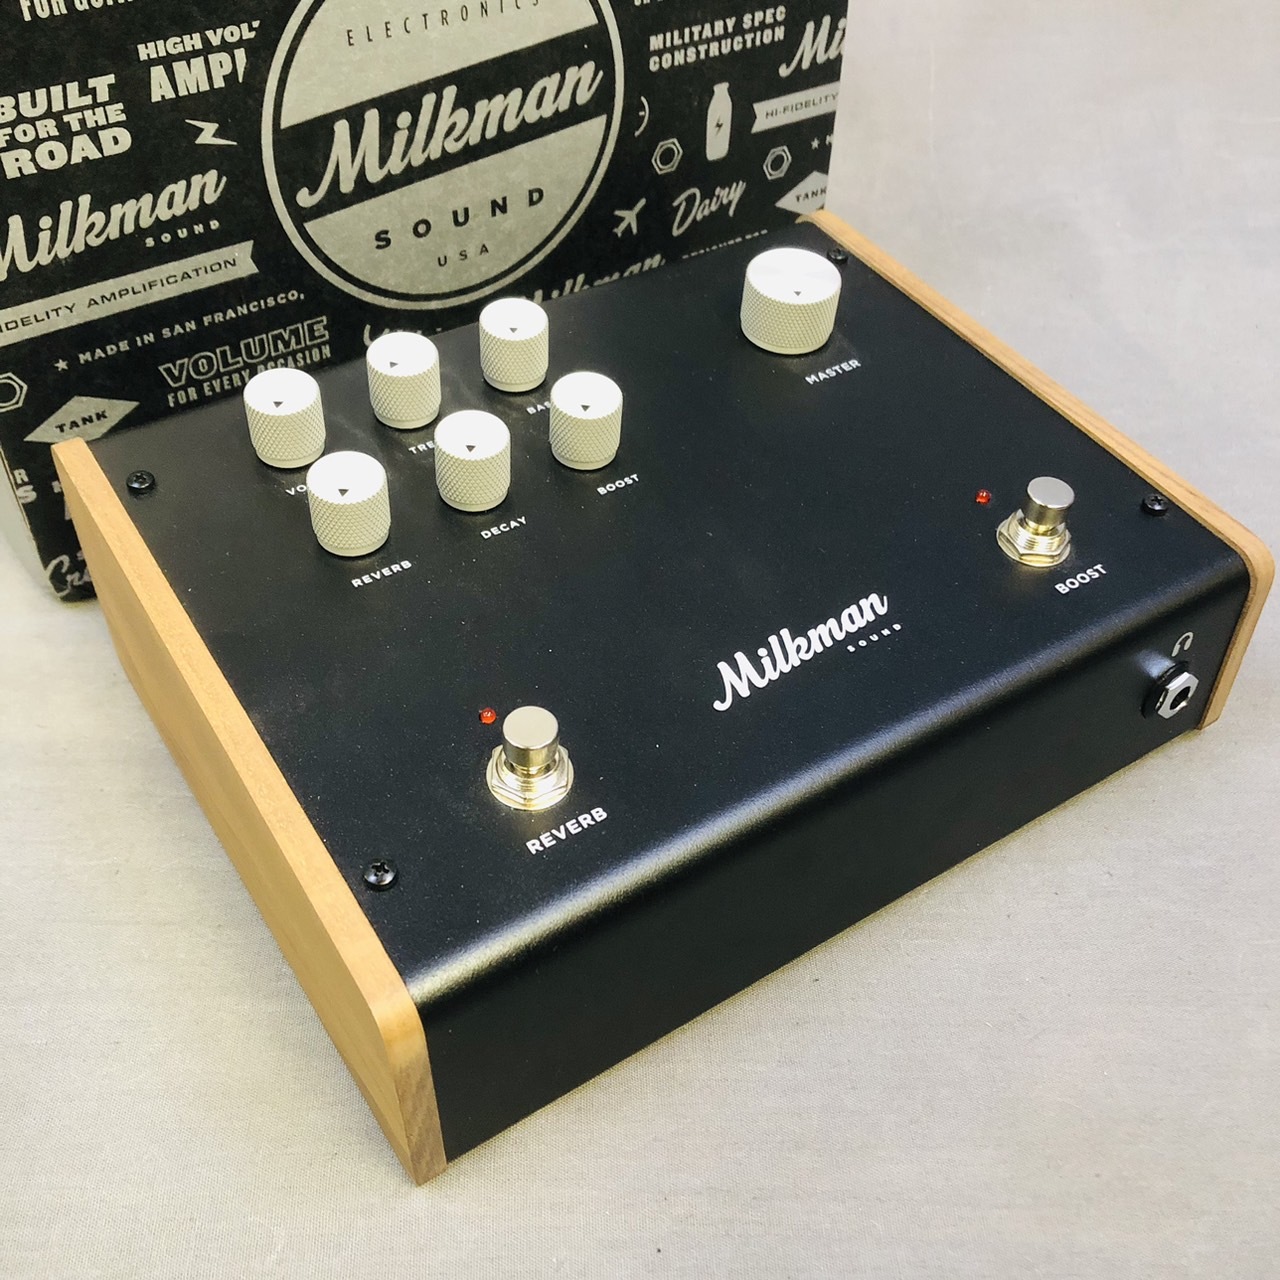 Milkman Sound The Amp 100 買取りました。デジマートにて 